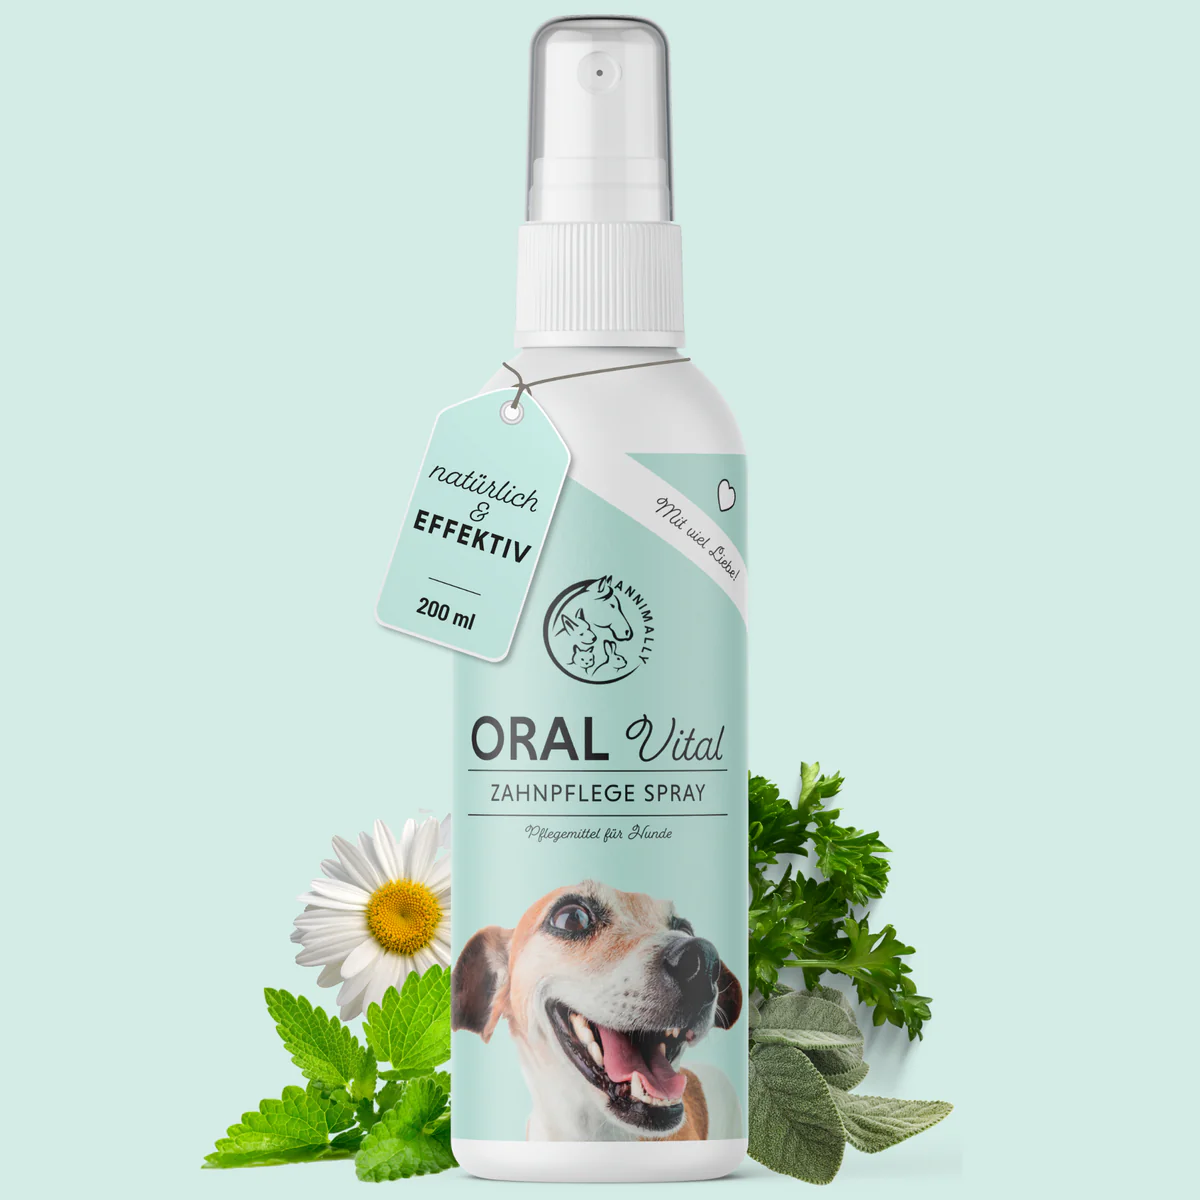 Oral Vital spray dental para perros de Annimally